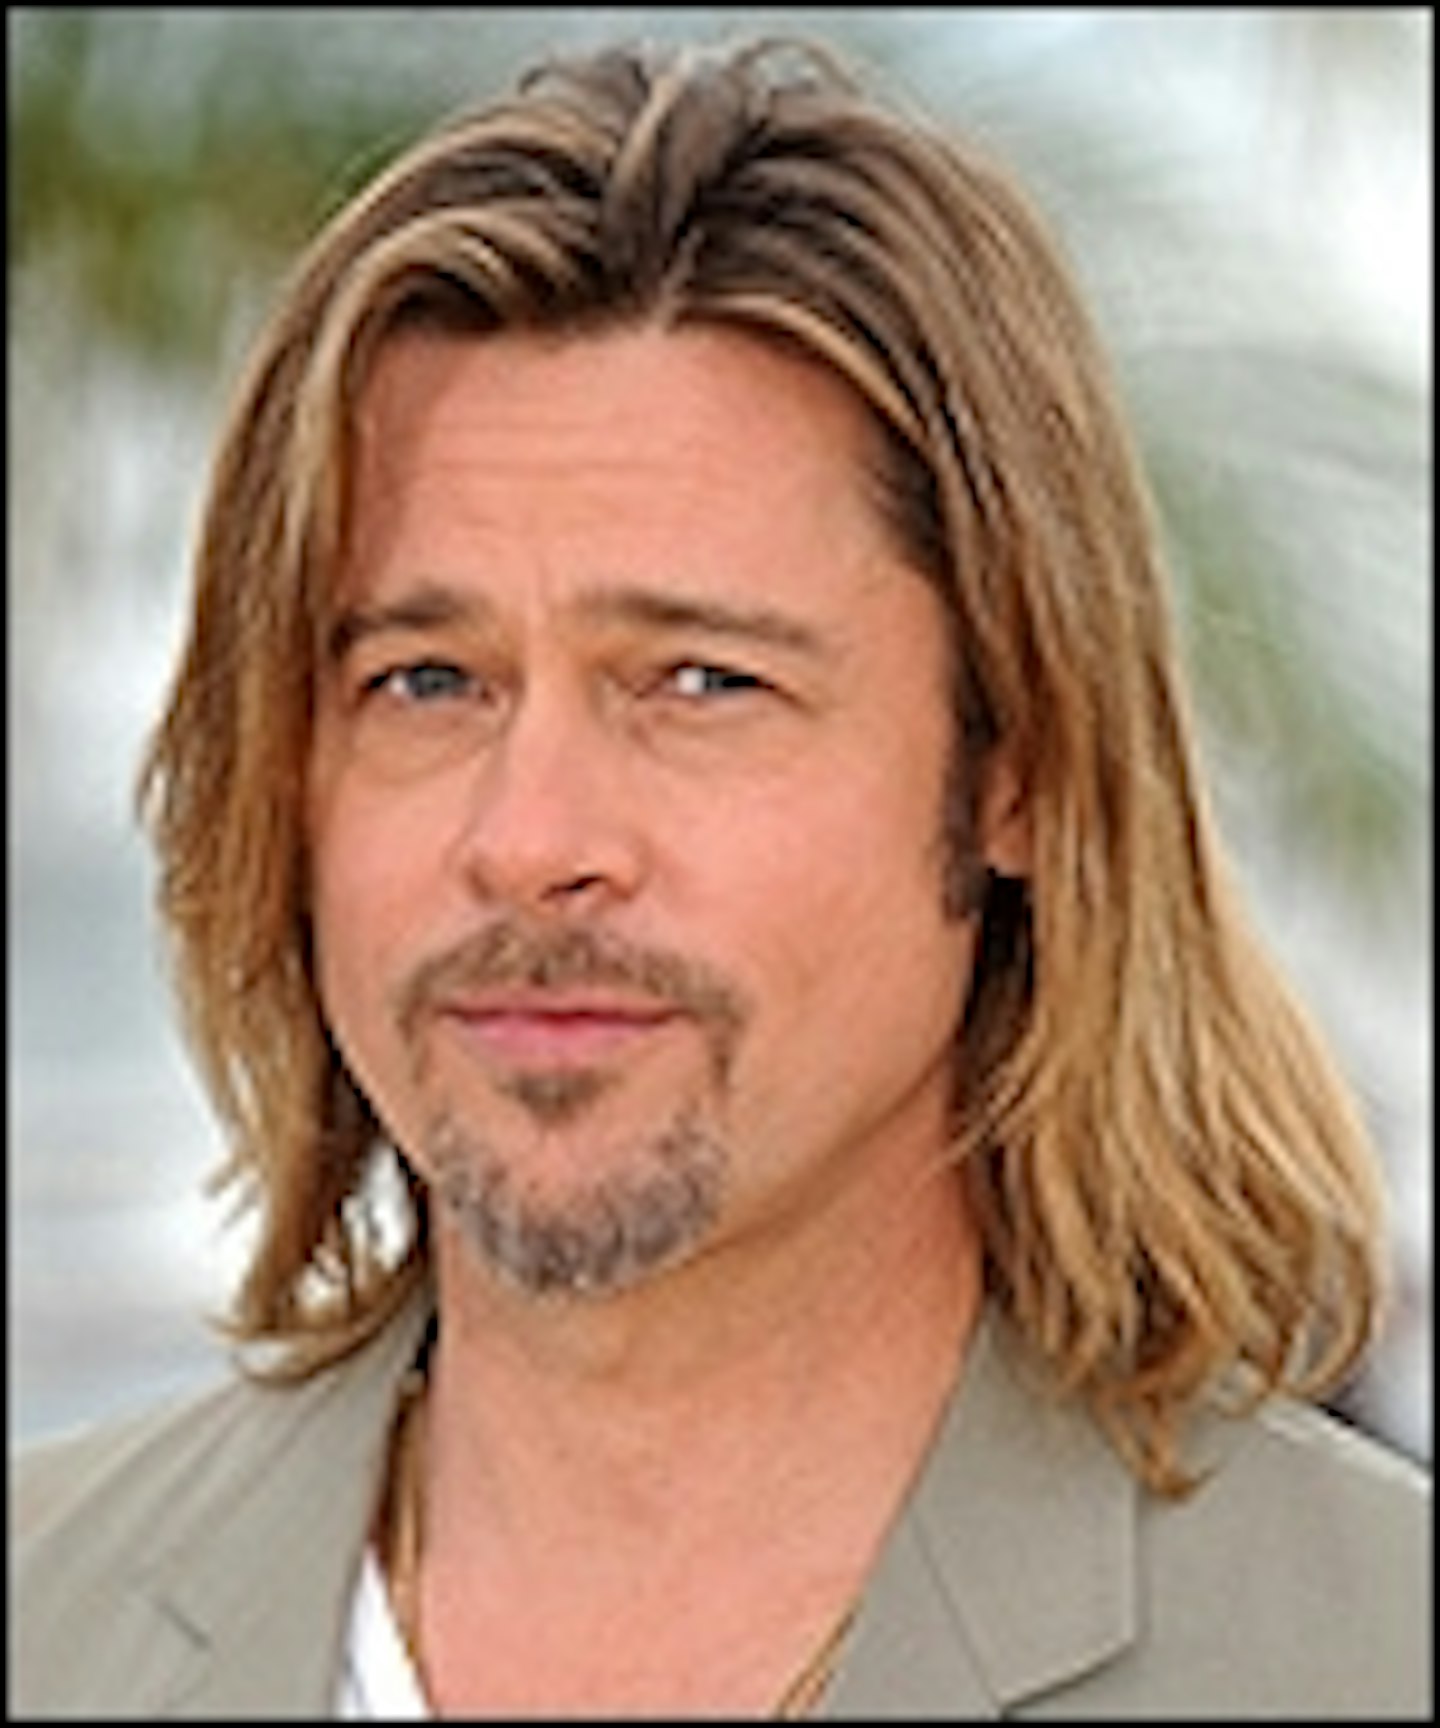 Now Brad Pitt Might Go Like Hell